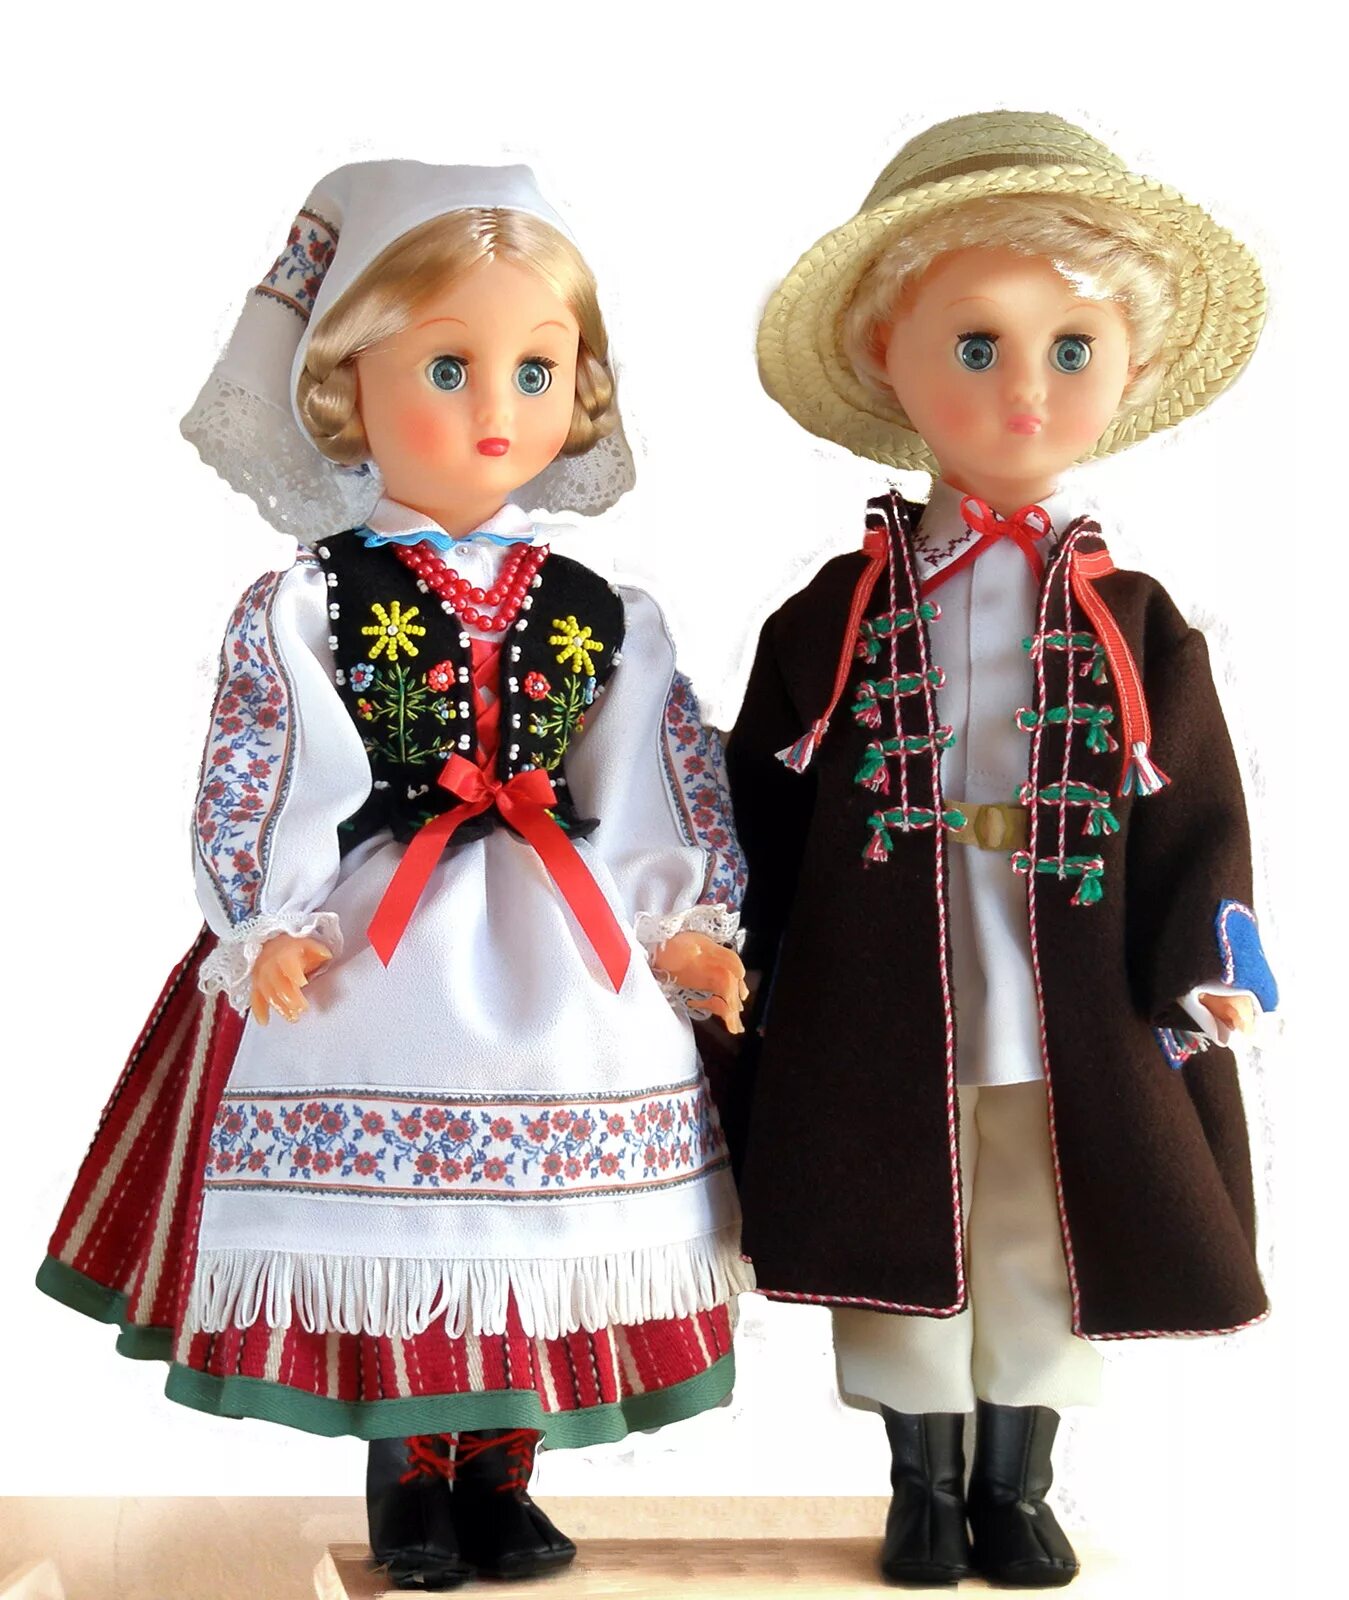 Купить кукол в национальных костюмах. Кукла в национальном наряде. Куклы в национальных костюмах. Польский национальный костюм. Кукла в польском национальном костюме.